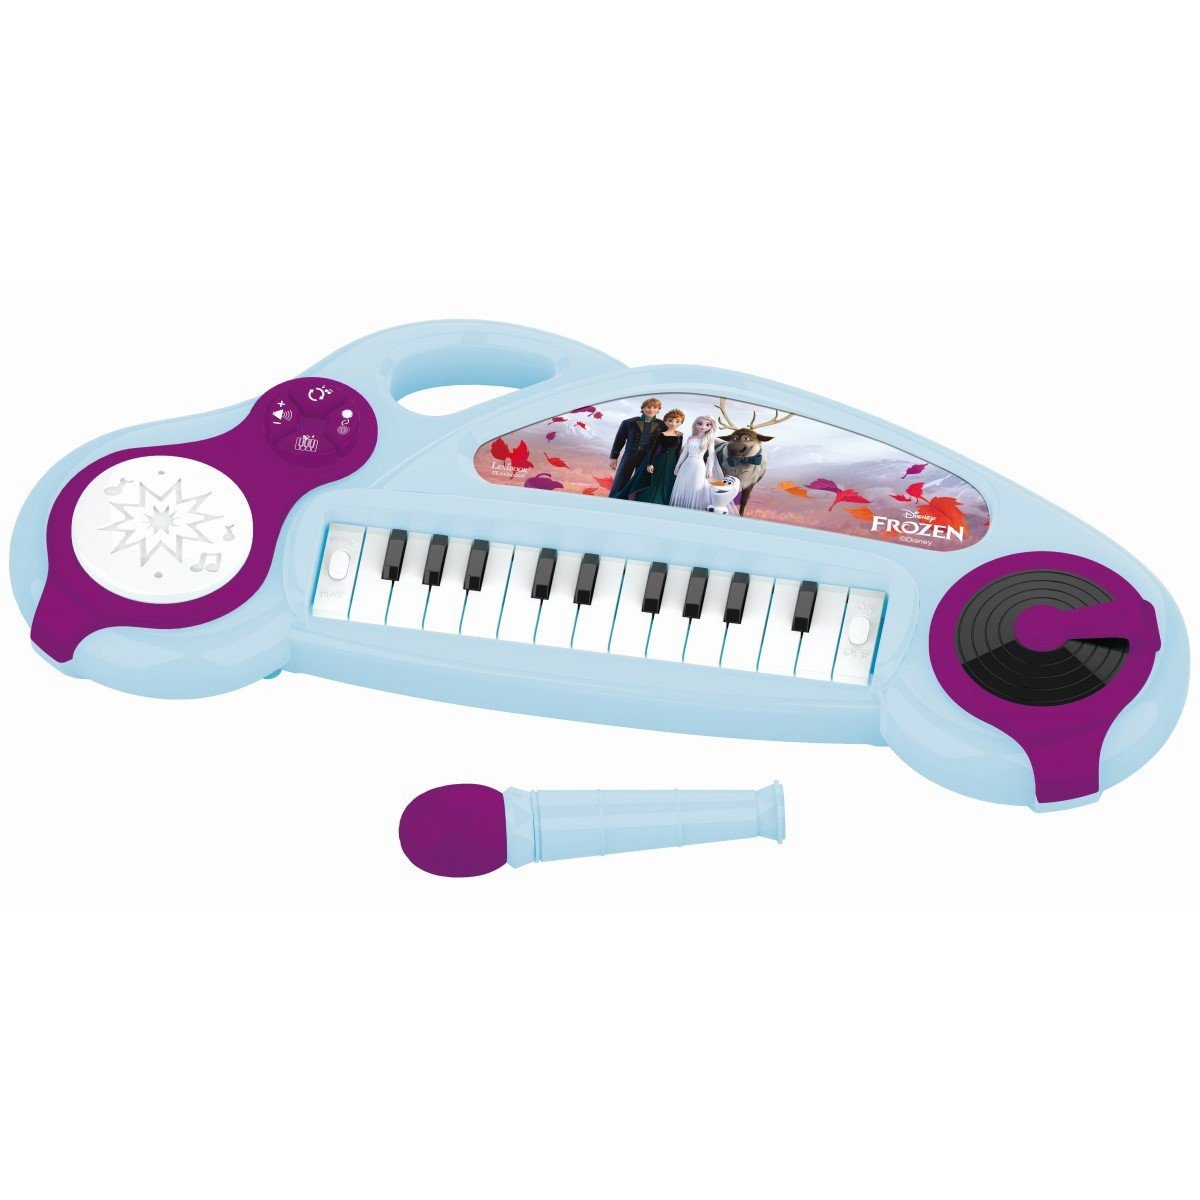 Lexibook® Spielzeug-Musikinstrument Elektronisches Keyboard Drumpad Frozen Elsa Anna Disney